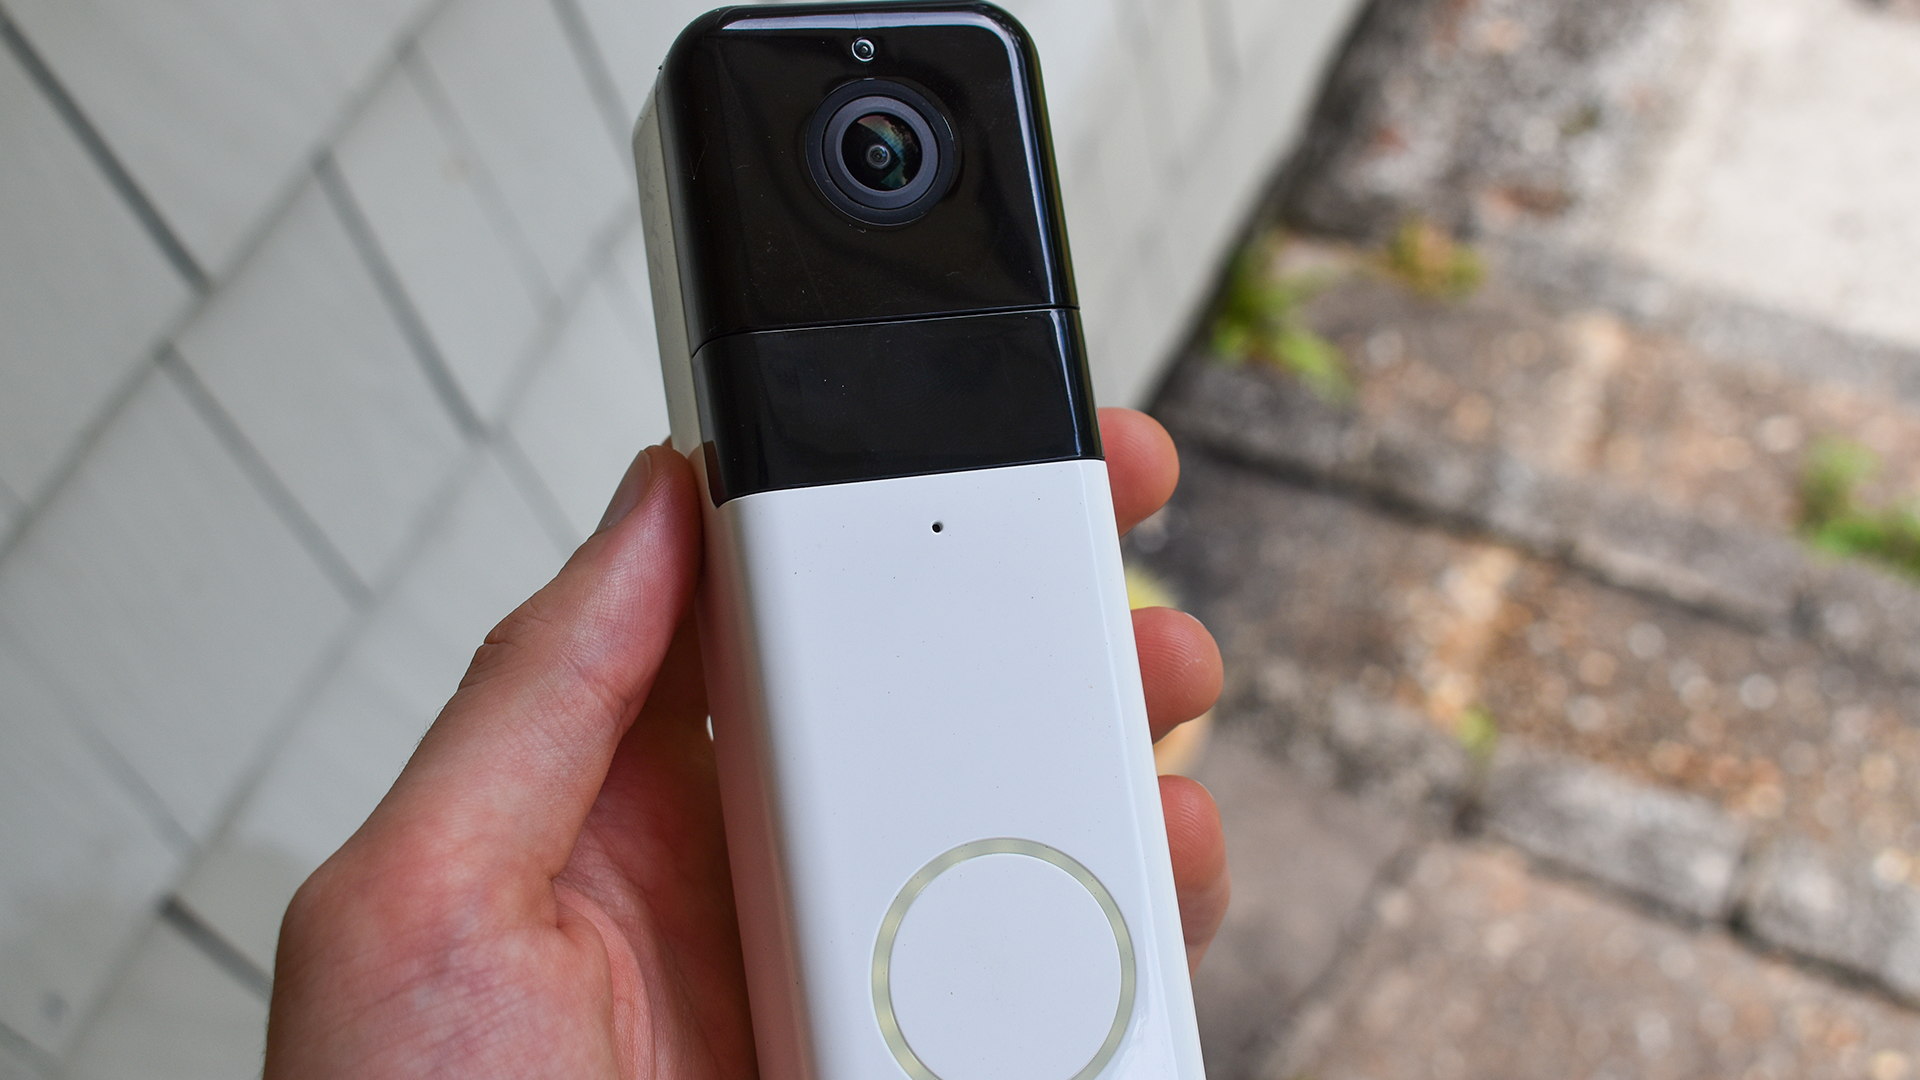 Wyze Video Doorbell Pro